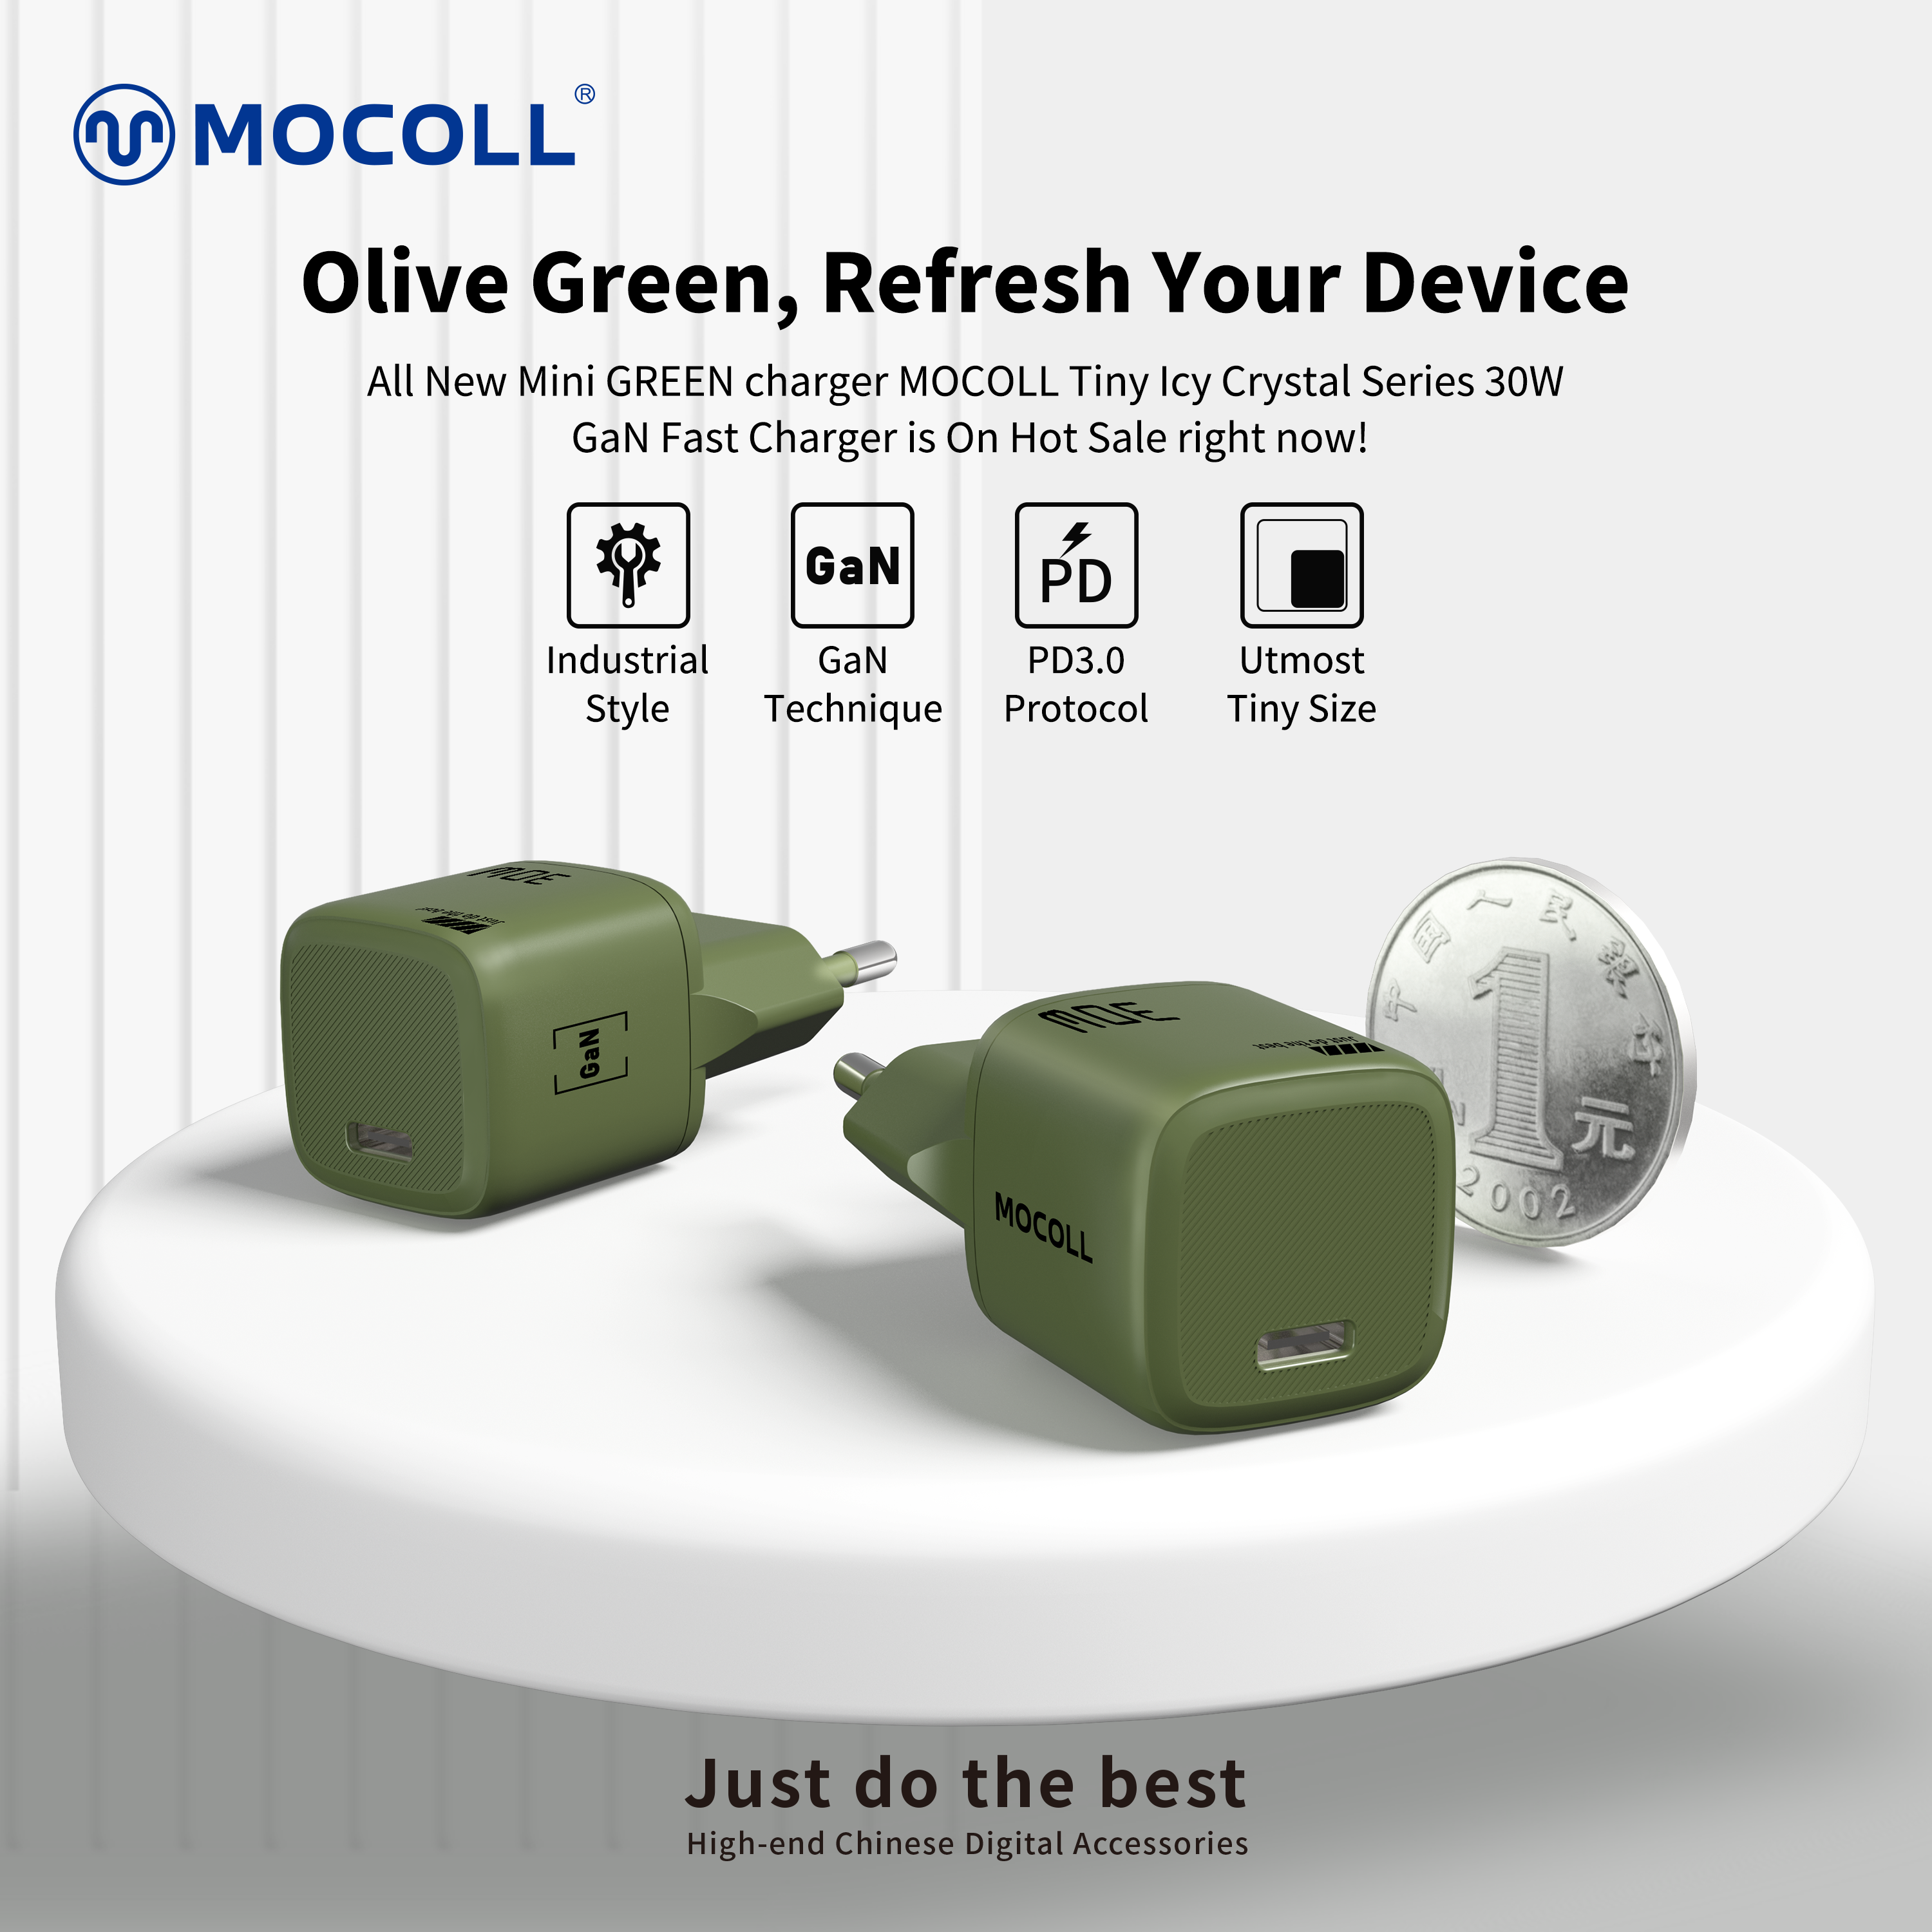 Auf ins Grüne | Industrieller Stil, neues olivgrünes GaN 30W-Schnellladegerät von MOCOLL